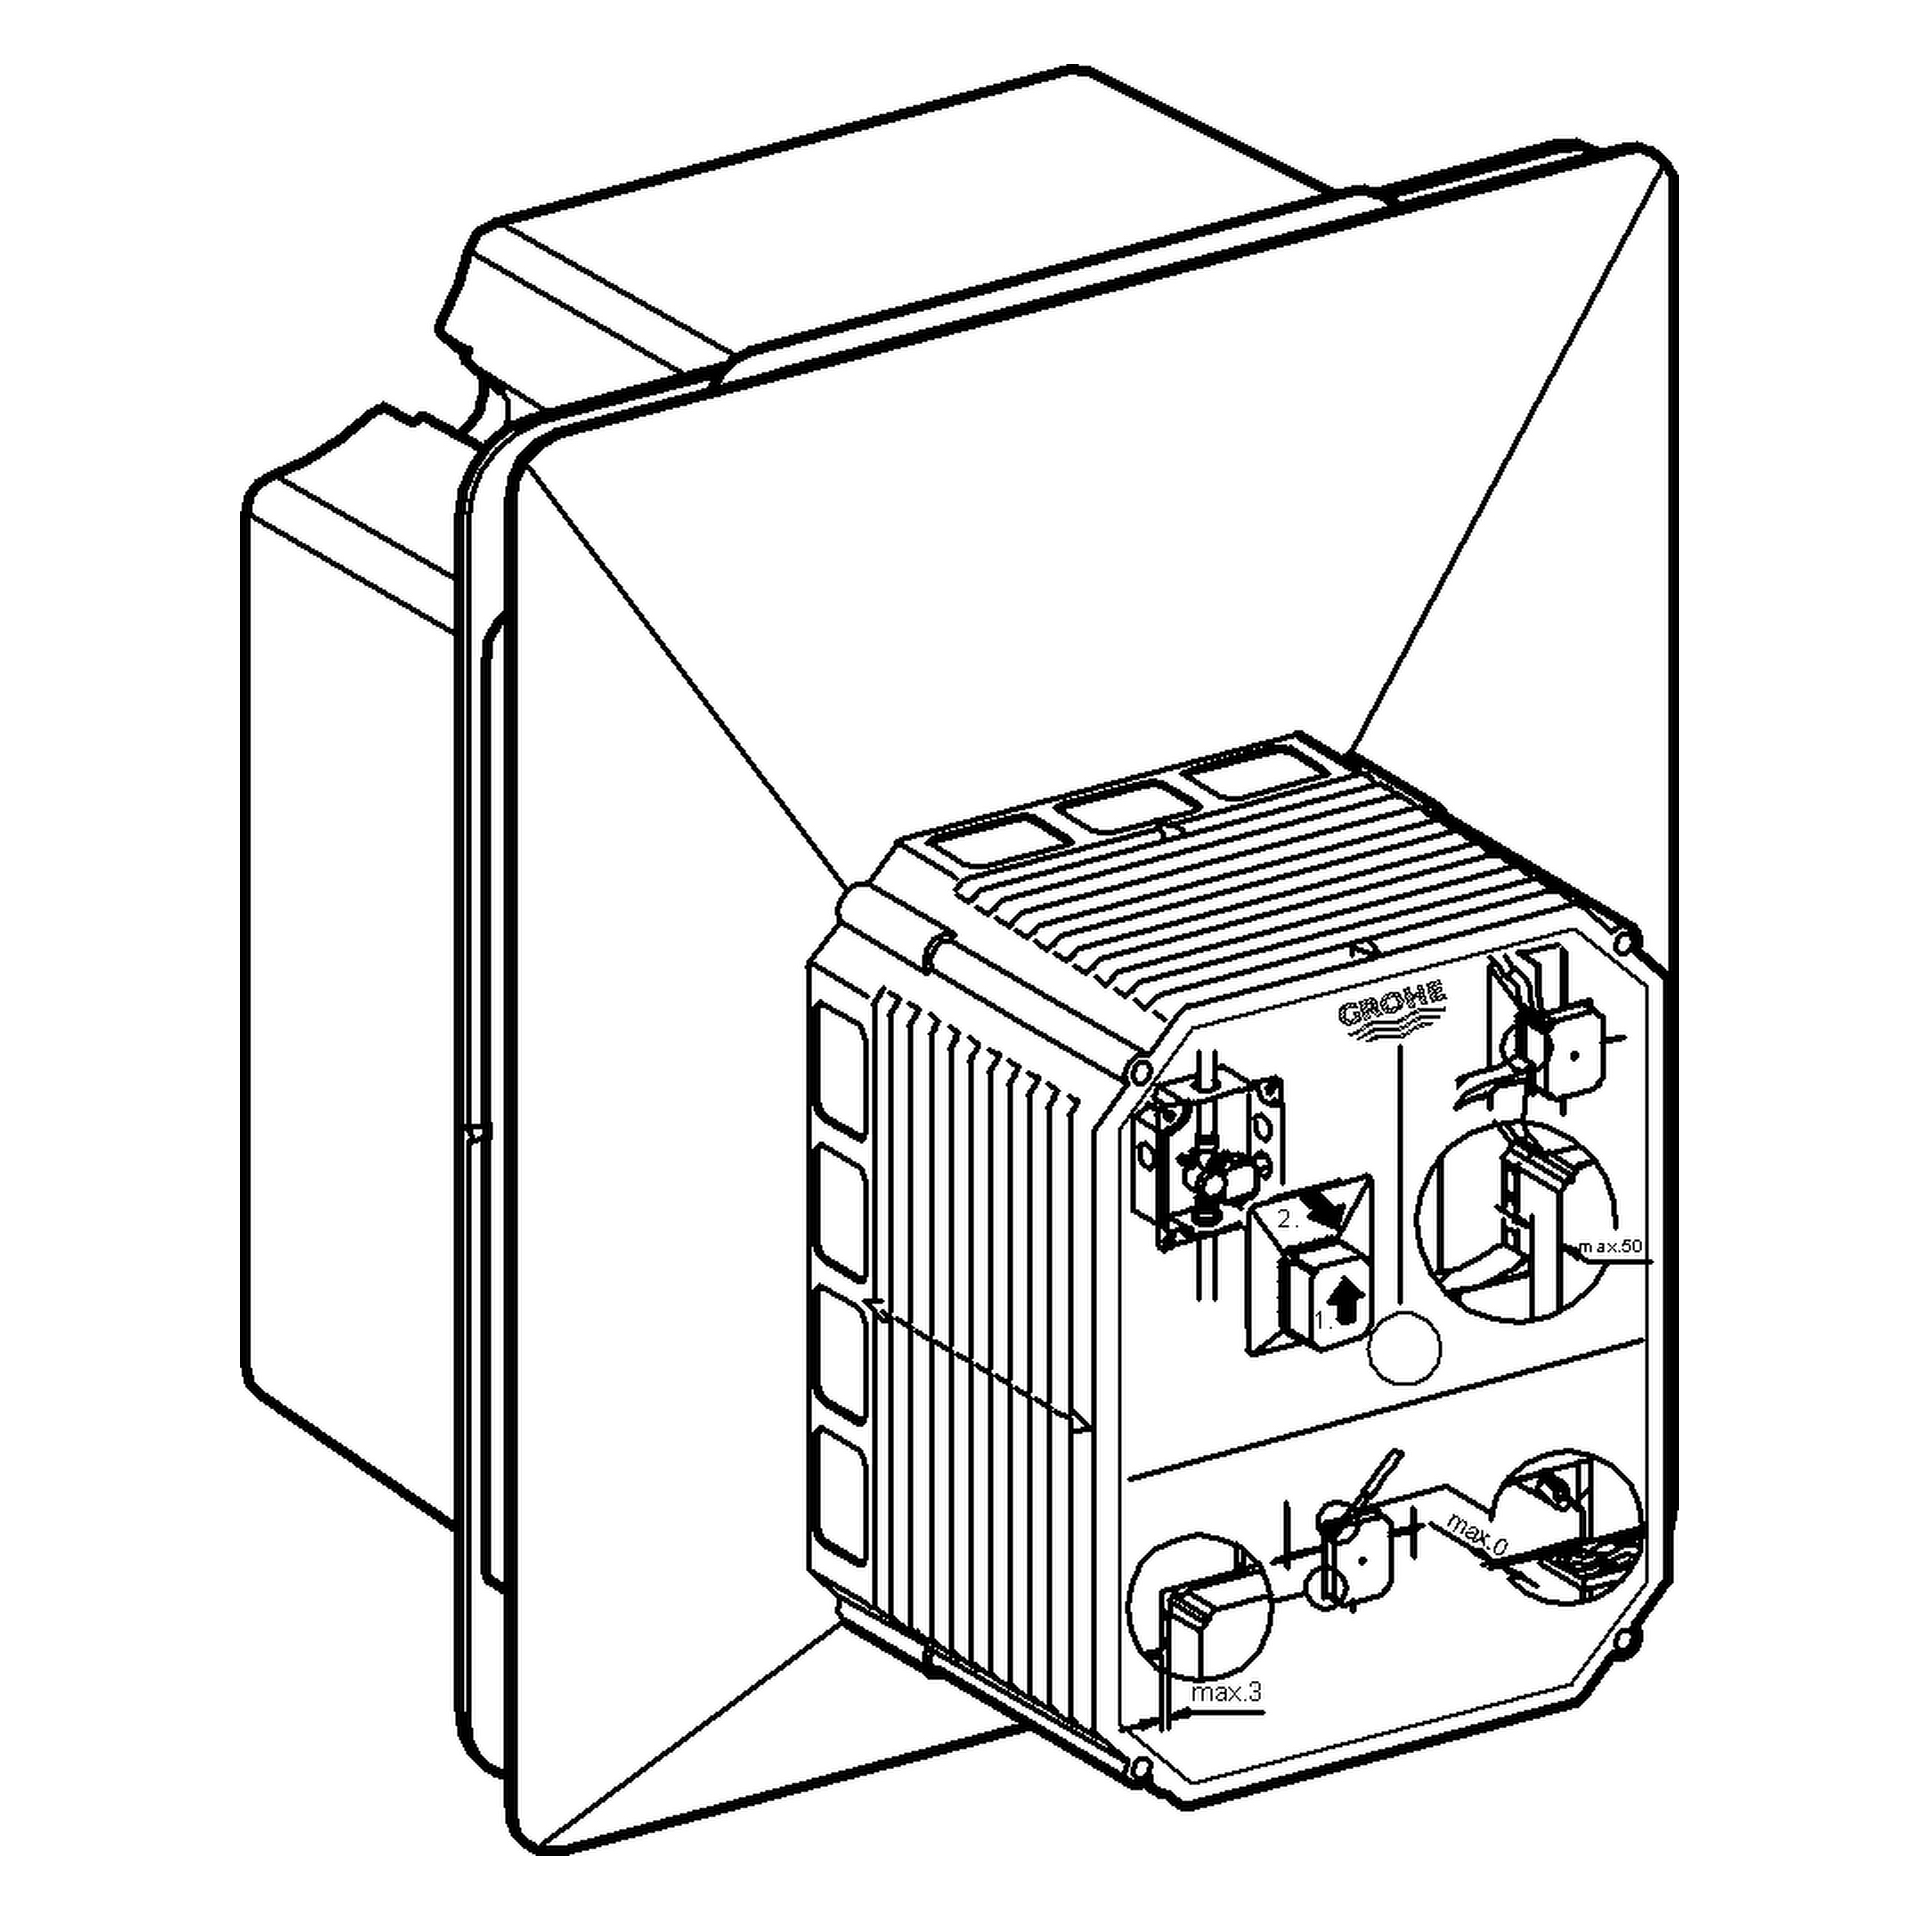 Urinal-Rohbauset Rapido U 37338, für manuelle Betätigung oder Tectron Infrarot Elektronik 6 V oder 230 V, für Nass- und Trockenausbau